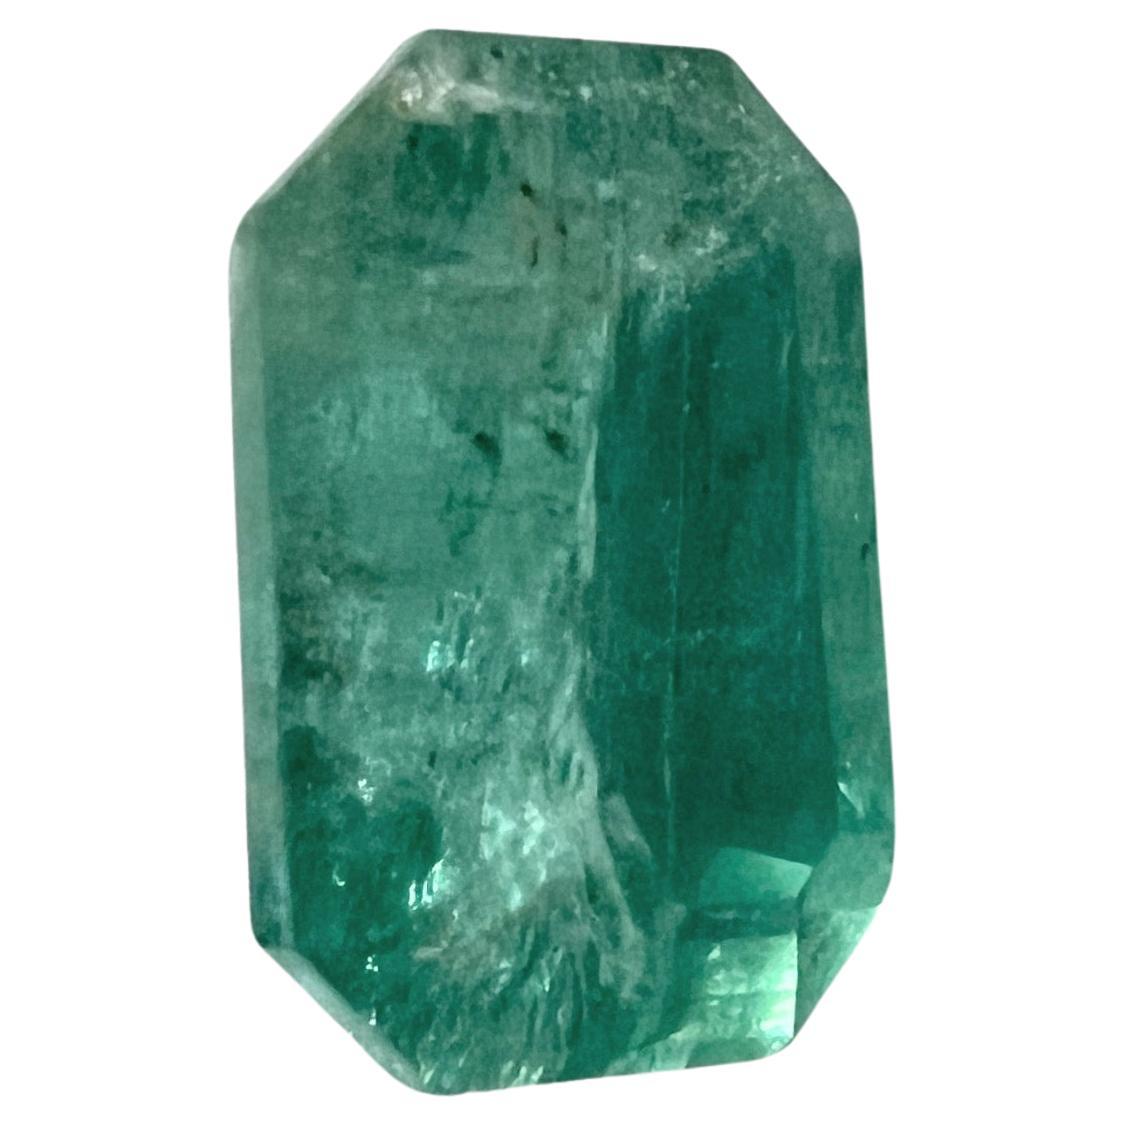 NO RESERVE 1.45ct Emerald Cut NON-OILED EMERALD Gemstone  For Sale 1